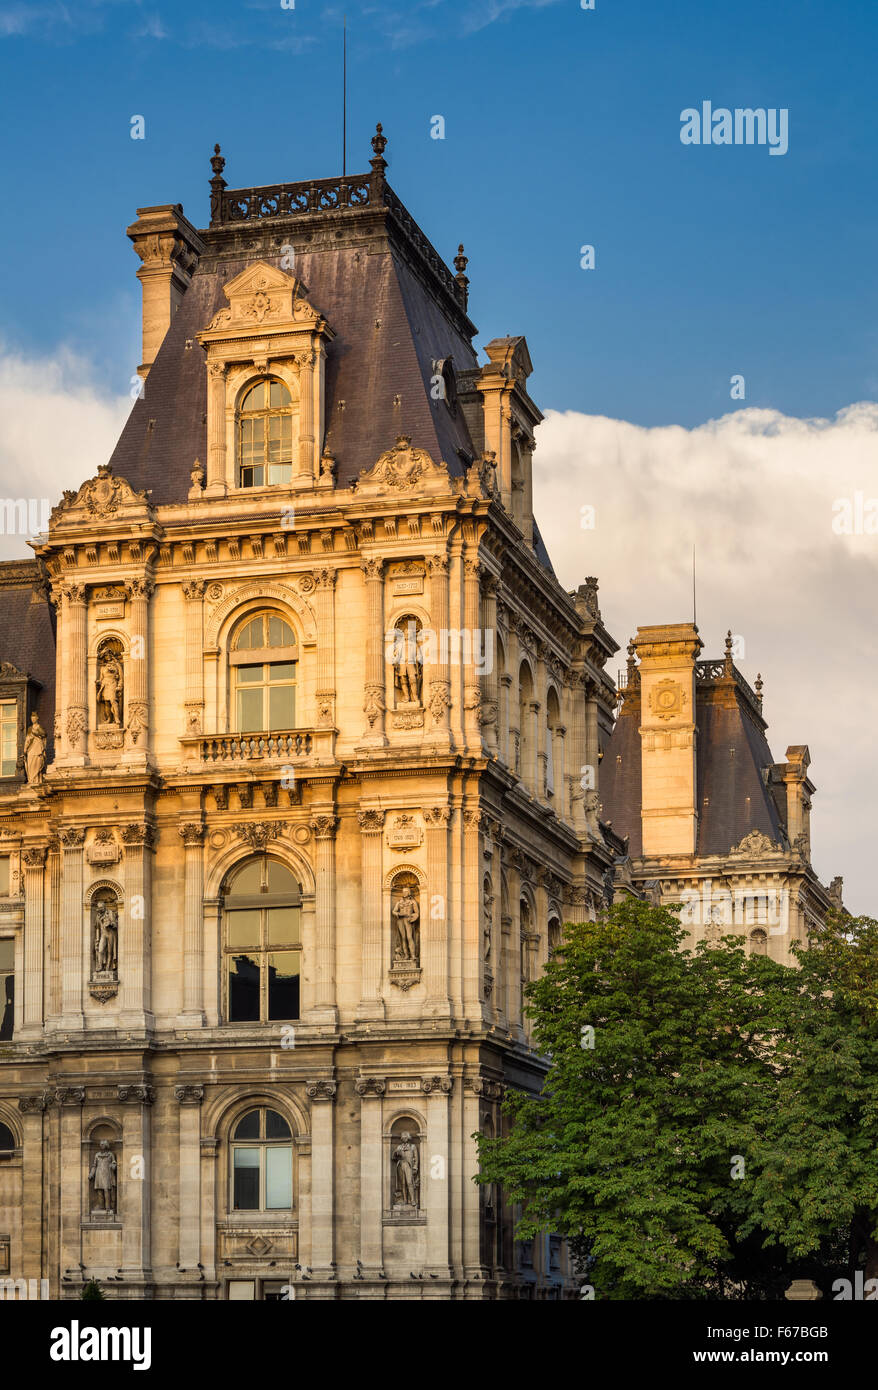 Détail de l'Hôtel de ville de style Renaissance Paris façade avant le coucher du soleil. Statues reconnaître historiquement importants parisiens. France Banque D'Images